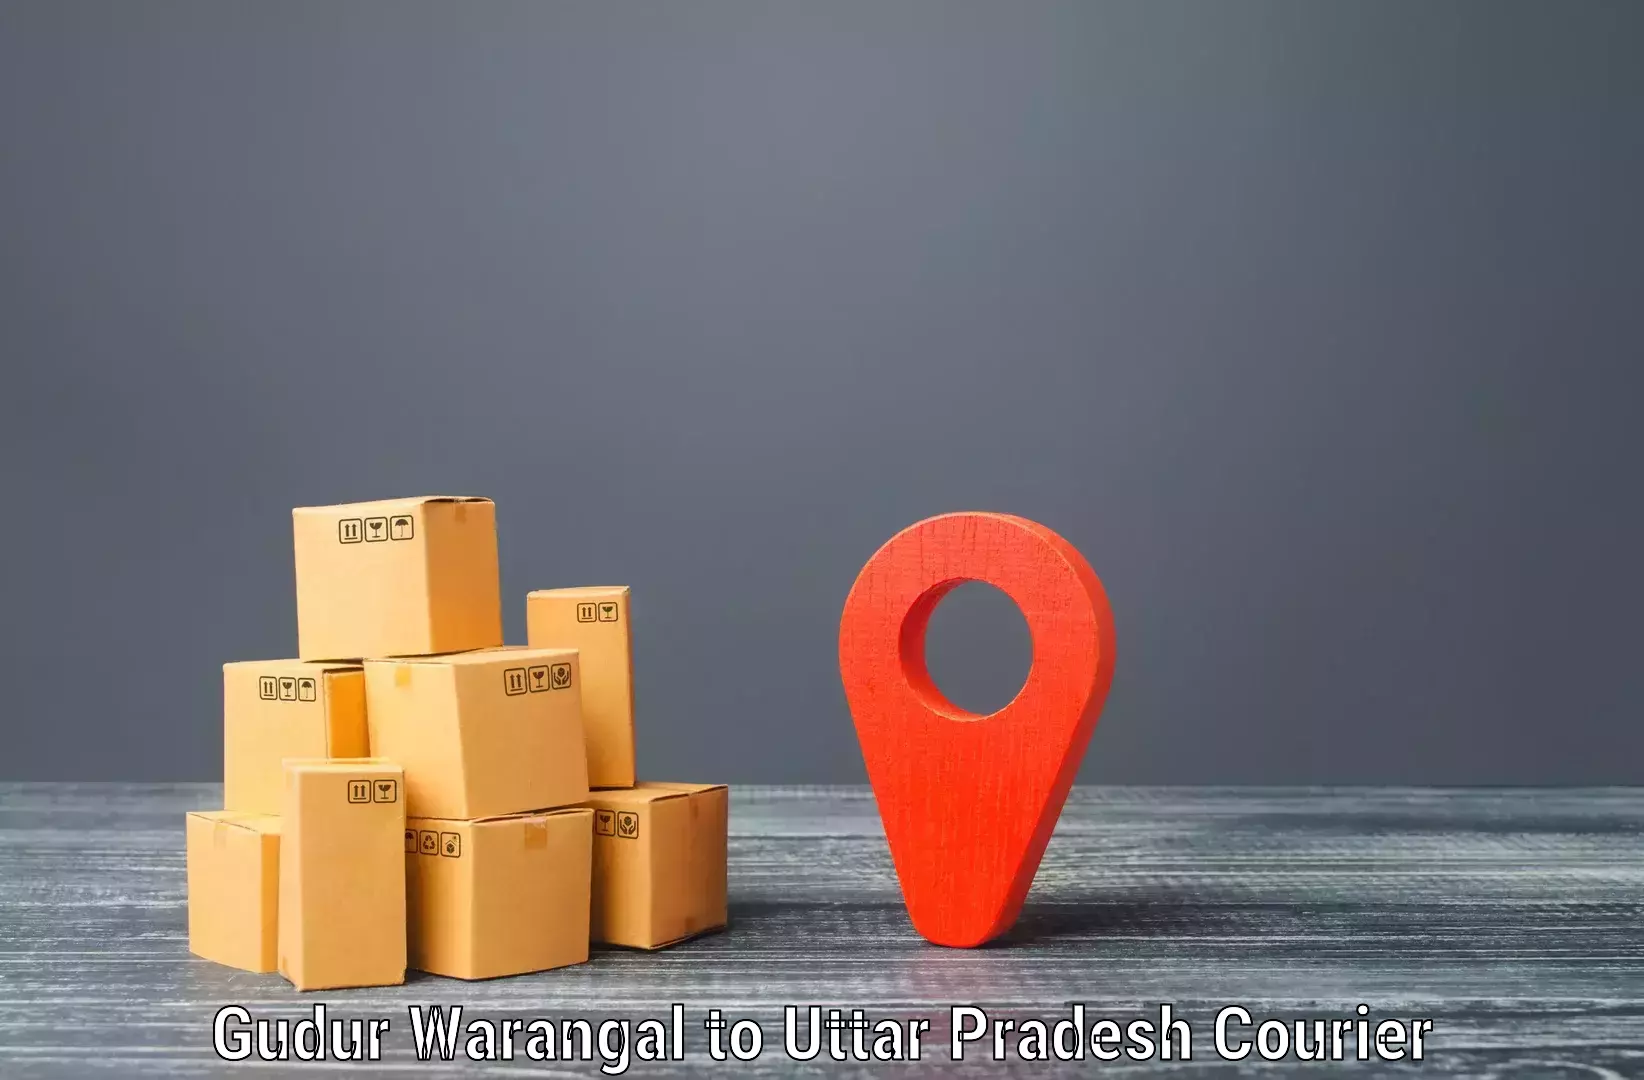 High-speed logistics services Gudur Warangal to Gauri Bazar